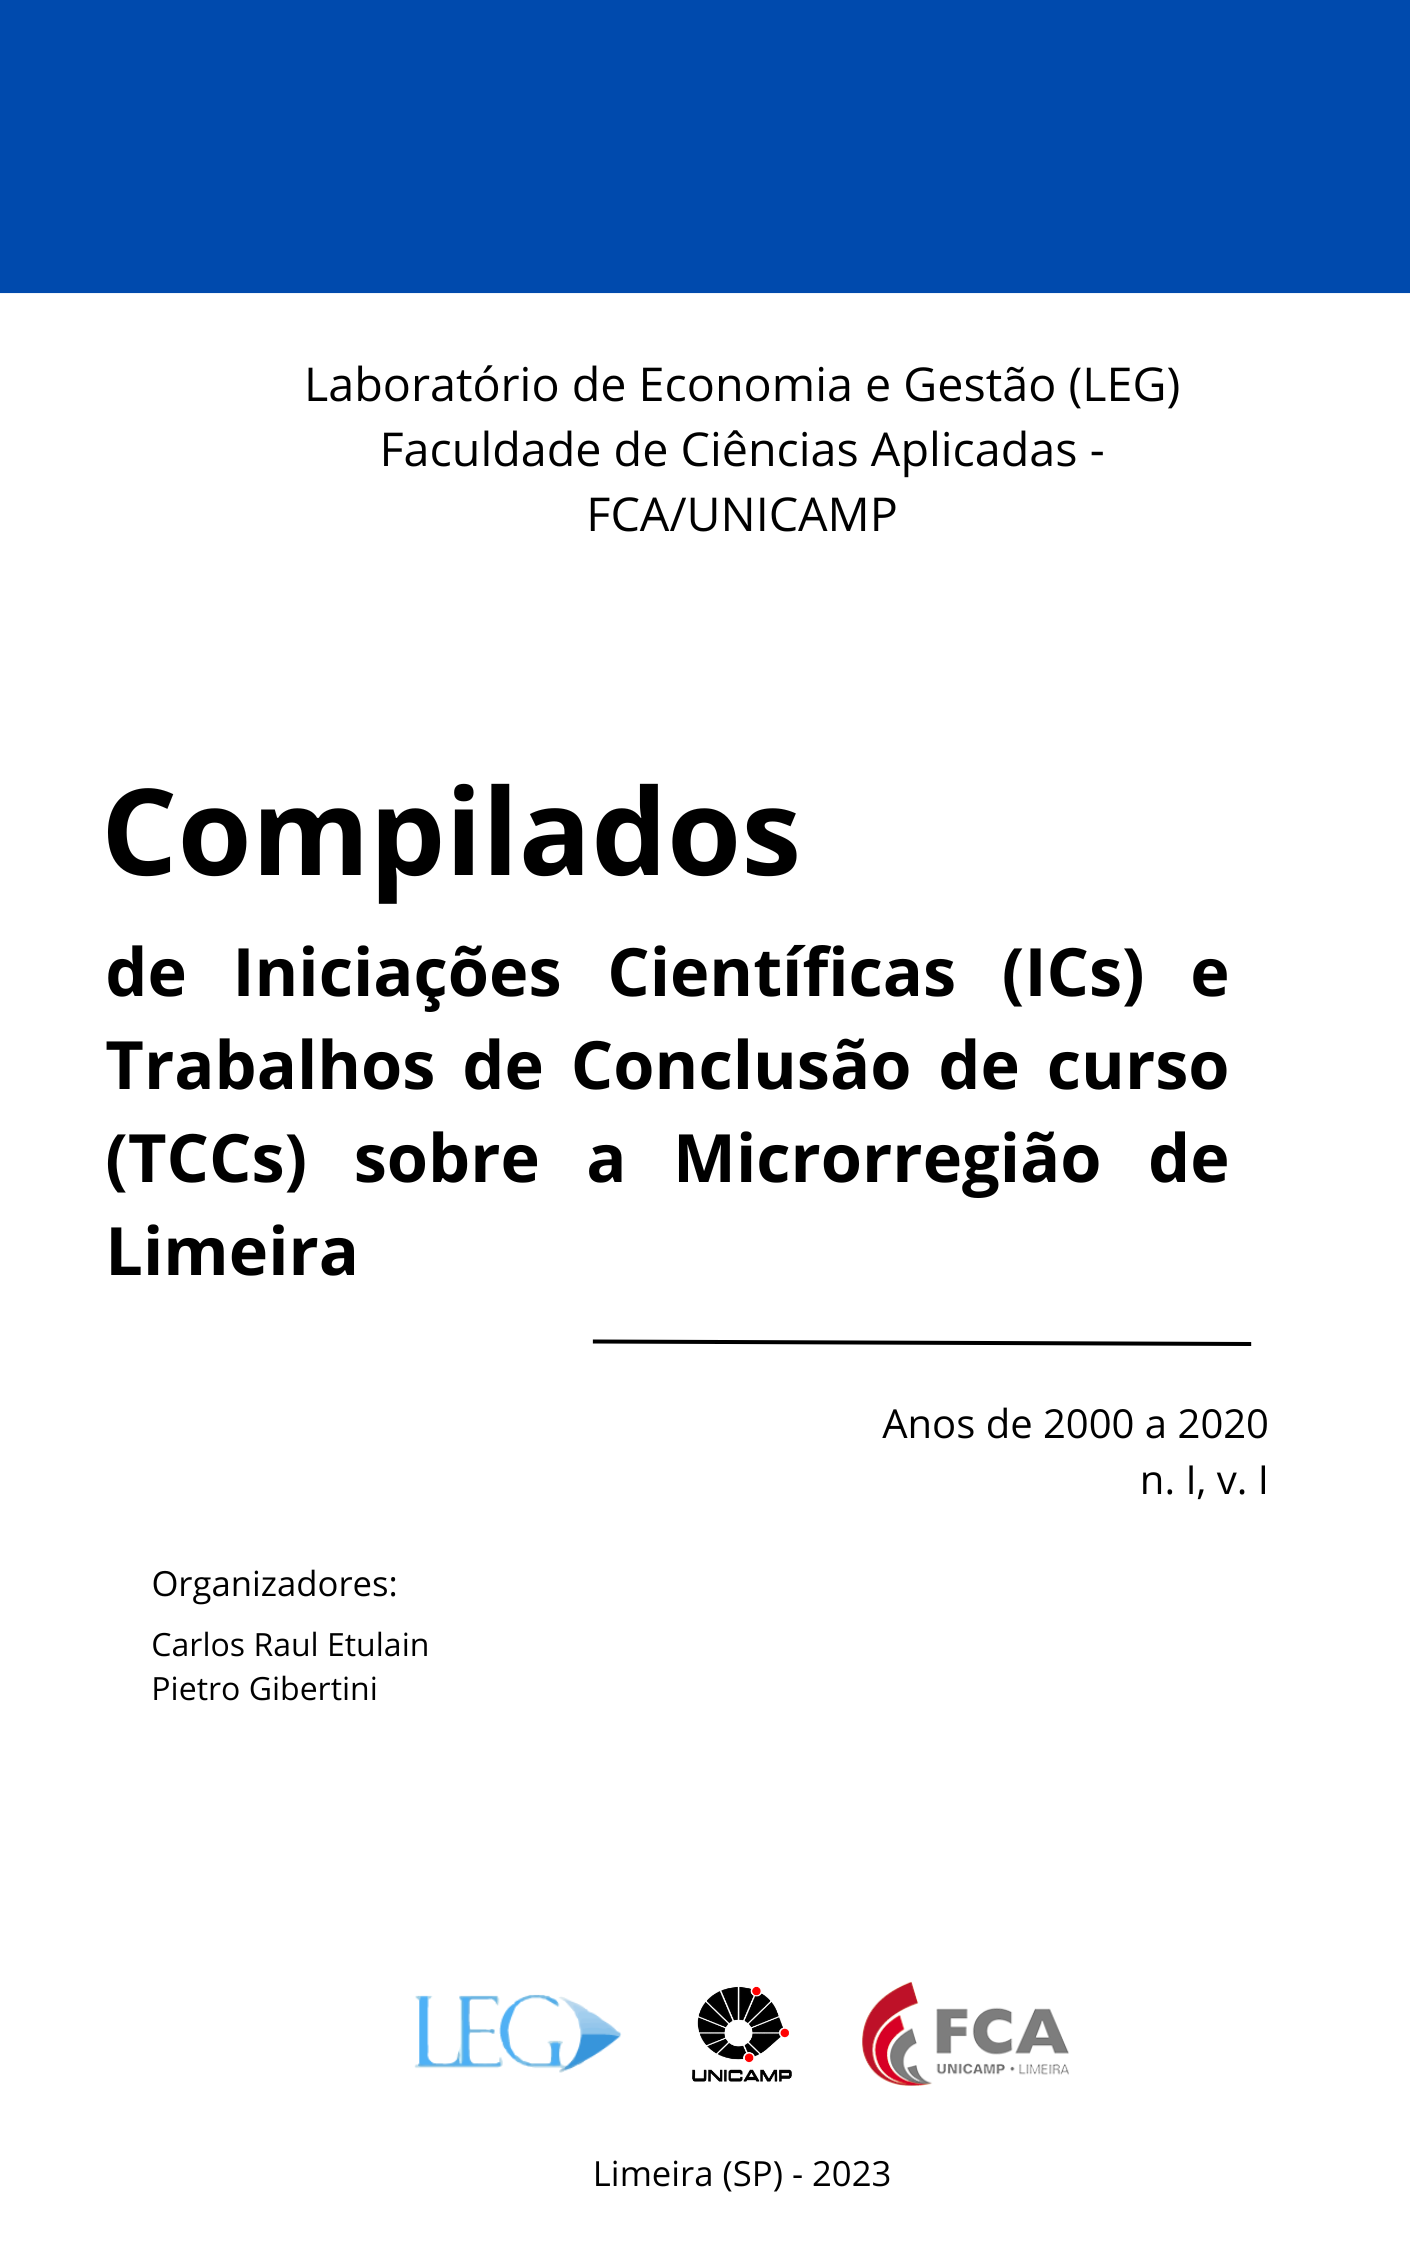                     Visualizar v. 1 n. 1 (2023): Compilados de Iniciações Cientificas (ICs) e Trabalhos de Conclusão de Curso (TCCs) sobre a Microrregião de Limeira
                